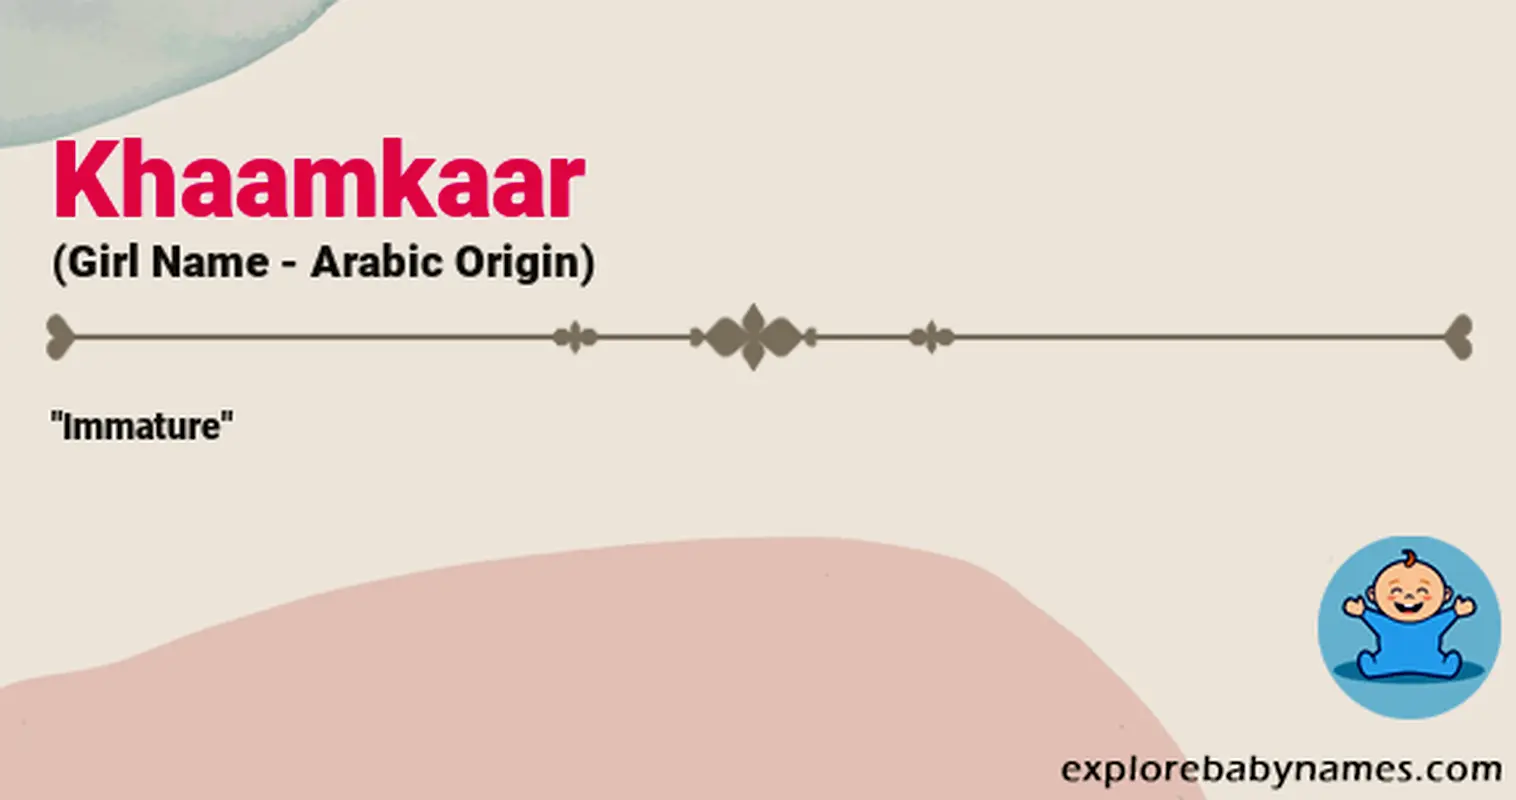 Meaning of Khaamkaar